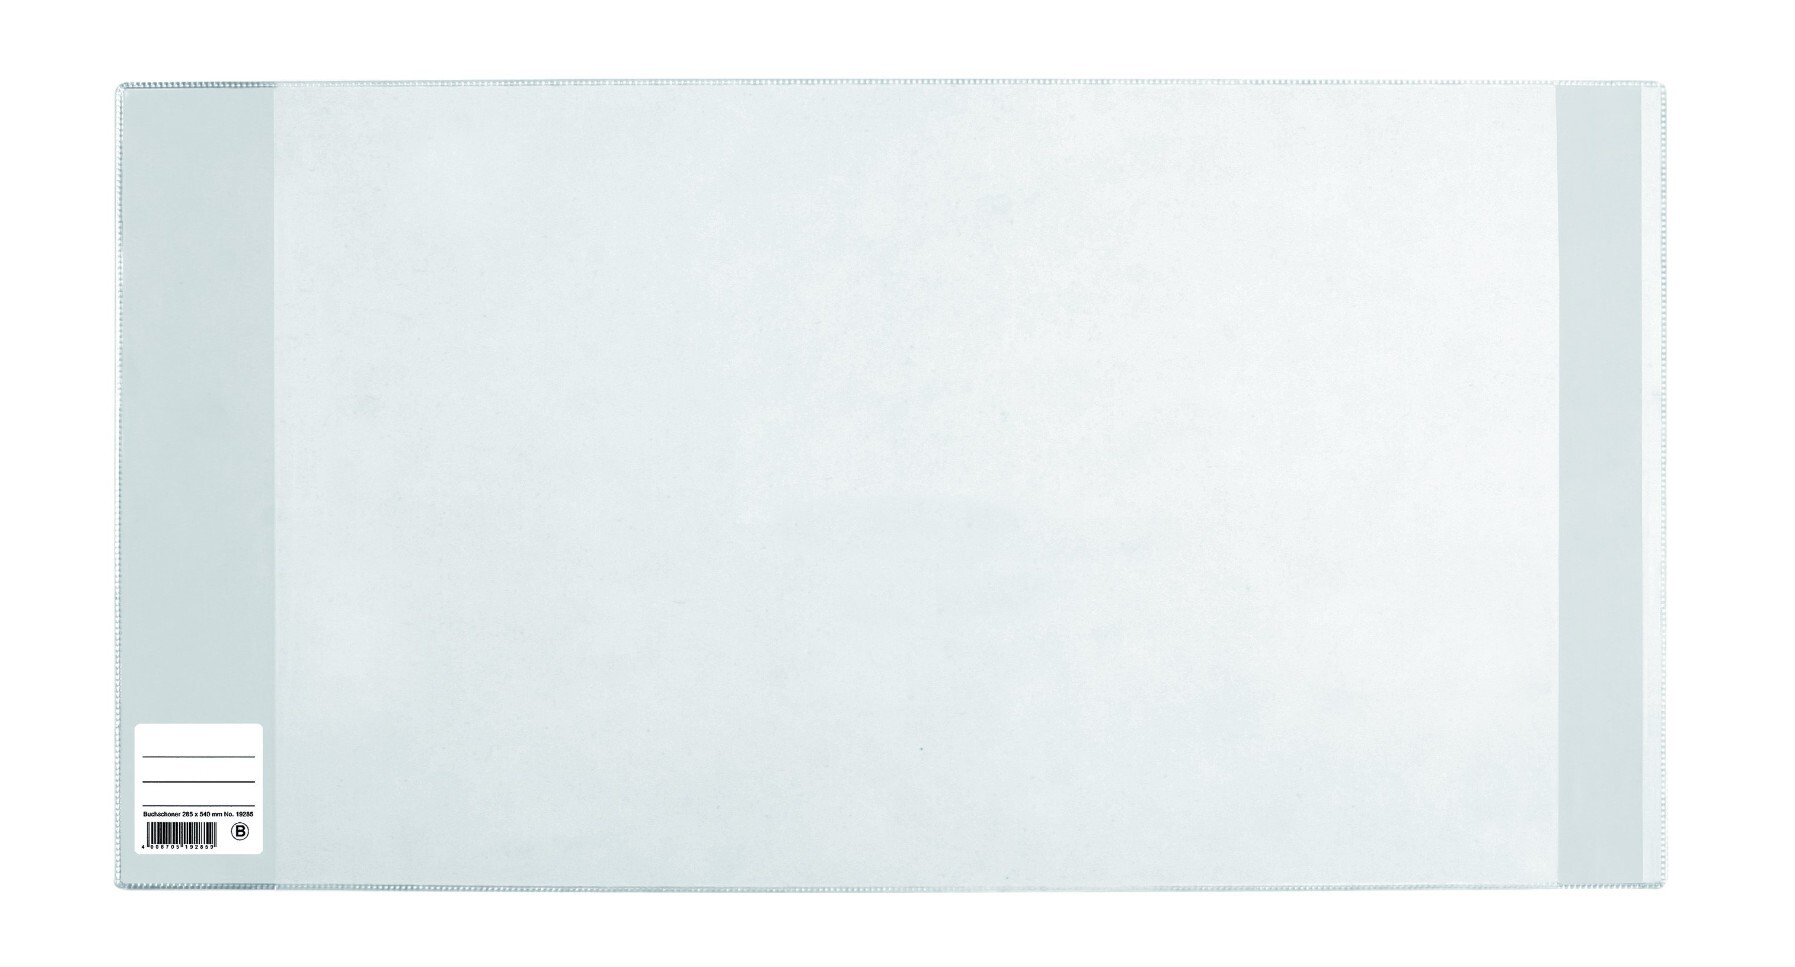 Herma 14265 - Buchumschlag Basic Größe 265 x 540 mm Kunststoff transparent blauer Rand 1 Buchschoner für Schulbücher